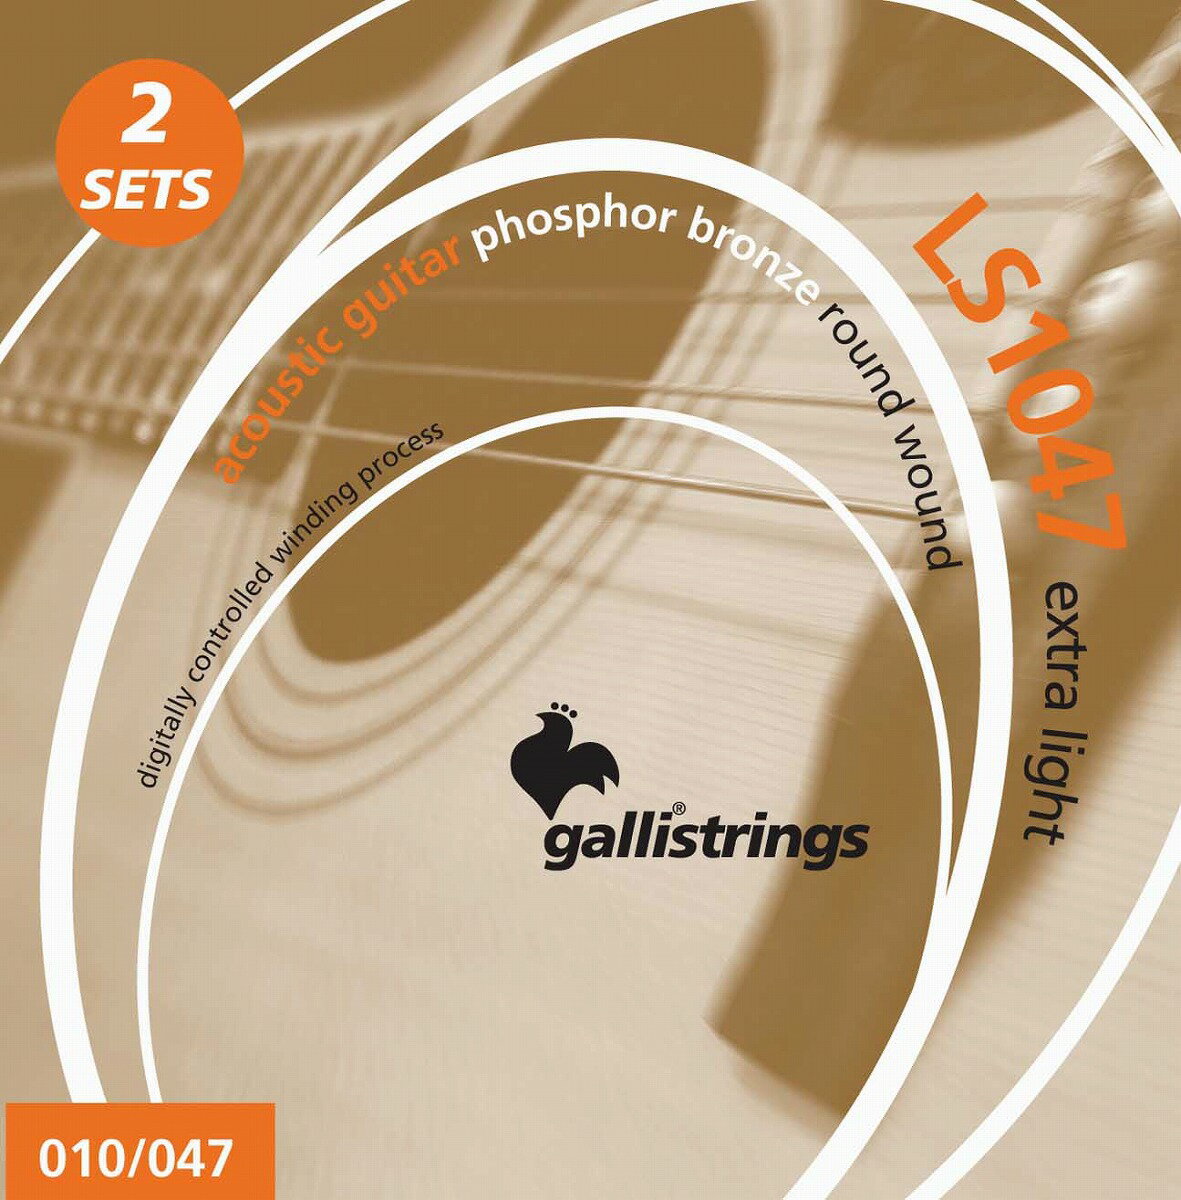 「Galli Strings」定番アコースティック弦の2セットパック! 古い歴史を誇る「Galli Strings」社は創業から現在に至るまで様々な楽器用の弦を開発・販売してきました。その多くはマンドリンやブズーキなども含んだアコースティック楽器です。その技術とノウハウが詰め込まれたアコースティックギター用弦の中でもダントツに人気を誇っているのが「LS（ラッキースター）」シリーズのお得なツインパック仕様です。華やかでキレがあり、サスティーンにも優れた、エレクトリックギター用でも高い評価を得ているスチール仕様のプレーン弦に、銅・すず・りんを独自の配合率で掛け合わせた、エッジの効いたボトムエンドと倍音が合わさり、ダイナミックレスポンスに優れたフォスファーブロンズ仕様の巻き弦とのセットです。コンピュータ制御により仕上げられているのでエラーも非常に少なく、均一で滑らかなフィンガリングをもたらします。エクストラライトゲージはライトスペシャルゲージよりもさらにゲージダウンを行ったセットで、抜群の演奏性を誇ります。サウンドも程良く低音域をカットされ、さらにサスティーンに優れていますので、ソロプレイやエレキギターからの持ち替えの方にもオススメ出来るセットです。「Galli Strings」社の歴史が詰まった「LSシリーズ」はあらゆるアコースティックギターに最適な弦です。〜Gallistrings〜1890年からイタリア・ナポリに拠点を置く、イタリア発老舗ストリングスブランド「Gallistrings（ガリストリングス）」。創業当初は高品位な天然ガット弦の生産を中心としており、現代でも世界中の多くのプレイヤーから愛されています。その生産品質とクラフトマンシップは創業当初から引き継がれており、現在では製造工程をコンピューター制御で行い、高水準な弦を安定した品質で生産するプロダクションラインを実現致しました。天然ガット弦から始まった「Gallistrings」は、今はエレクトリックギター・ベース・アコースティック等から、バンジョー・マンドリン等のブルーグラス系、ブズーキ・ラウドといった伝統楽器など、あらゆる楽器のニーズに応えることが出来る、数少ないストリングスブランドへと成長致しました。様々な弦楽器用弦を100年以上に渡り生産してきたGalli Strings社のコンピュータ制御により生産されるピッチの安定性、タッチ感のよさ、そして安定した品質は歴史とこだわりを間違いなく実感いただけます。 ※画像はサンプルです。複数のモールに掲載されているため、売却に伴う商品情報の削除は迅速を心掛けておりますが必ずしもリアルタイムではございませんので、ご注文後に万一売り切れとなっておりました際は誠に申し訳ございませんがご容赦くださいませ。 ◆主な仕様◆◎PL010 : E-1st Plain Steel .010◎PL014 : B-2nd Plain Steel .014◎PW023 : G-3rd Phosphore Bronze .023◎PW030 : D-4th Phosphore Bronze .030◎PW039 : A-5th Phosphore Bronze .039◎PW047 : E-6th Phosphore Bronze .047 製品仕様 PL010E-1st Plain Steel .010PL014B-2nd Plain Steel .014PW023G-3rd Phosphore Bronze .023PW030D-4th Phosphore Bronze .030PW039A-5th Phosphore Bronze .039PW047E-6th Phosphore Bronze .047